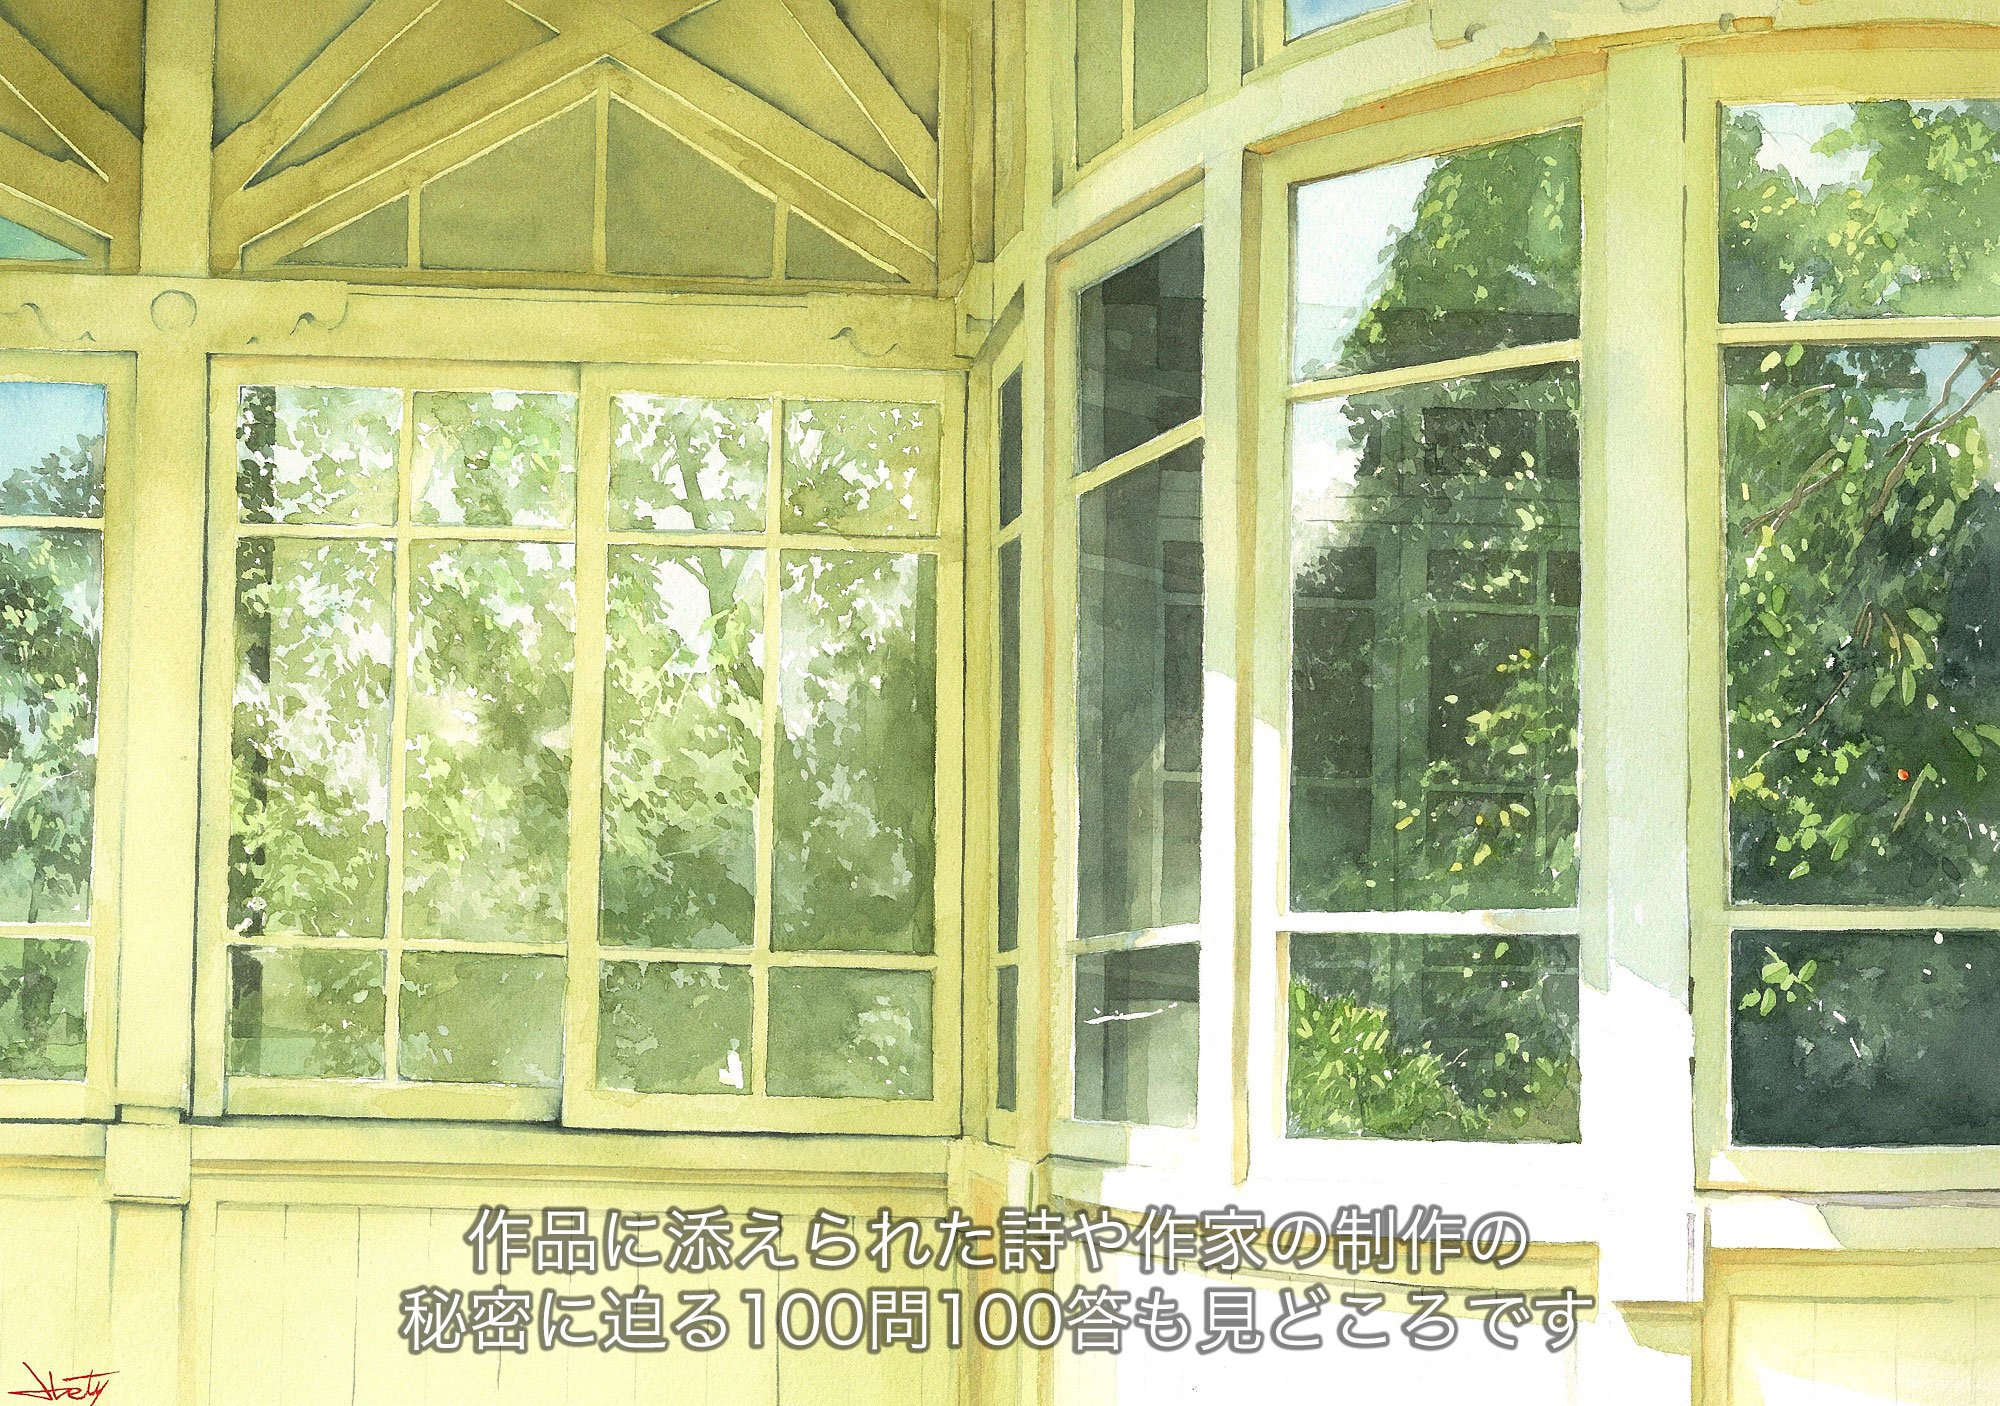 055_窓に映る夏-30x42-2013-WF-詩_r.jpg